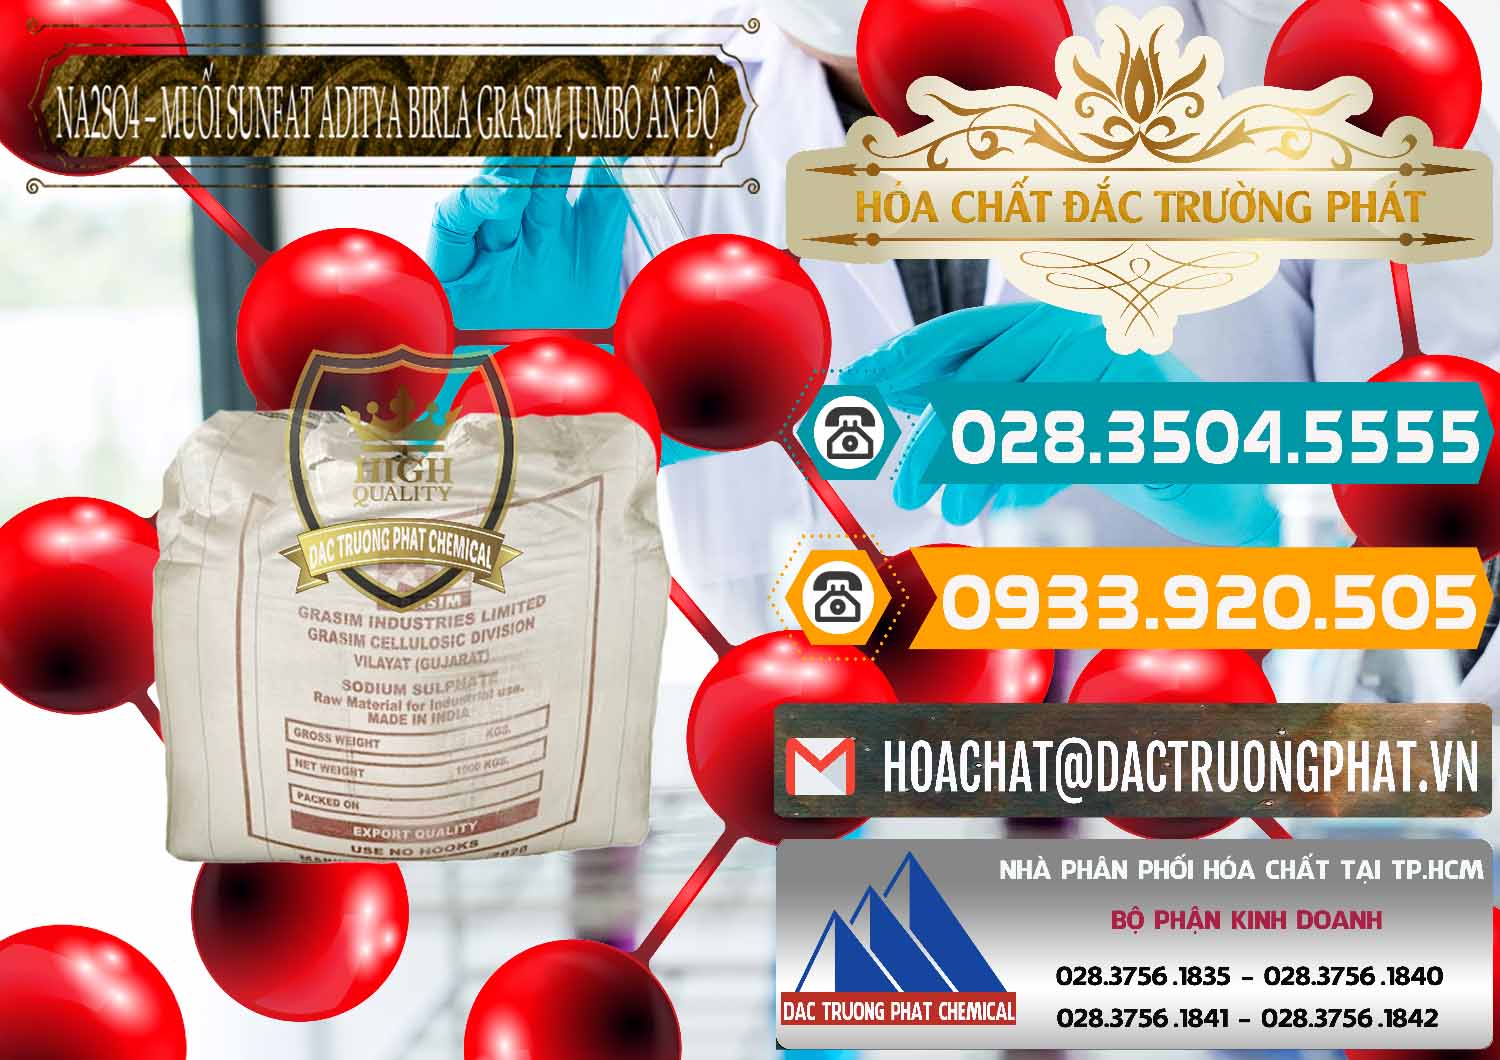 Nơi chuyên phân phối và bán Sodium Sulphate - Muối Sunfat Na2SO4 Jumbo Bành Aditya Birla Grasim Ấn Độ India - 0357 - Đơn vị nhập khẩu ( cung cấp ) hóa chất tại TP.HCM - congtyhoachat.vn